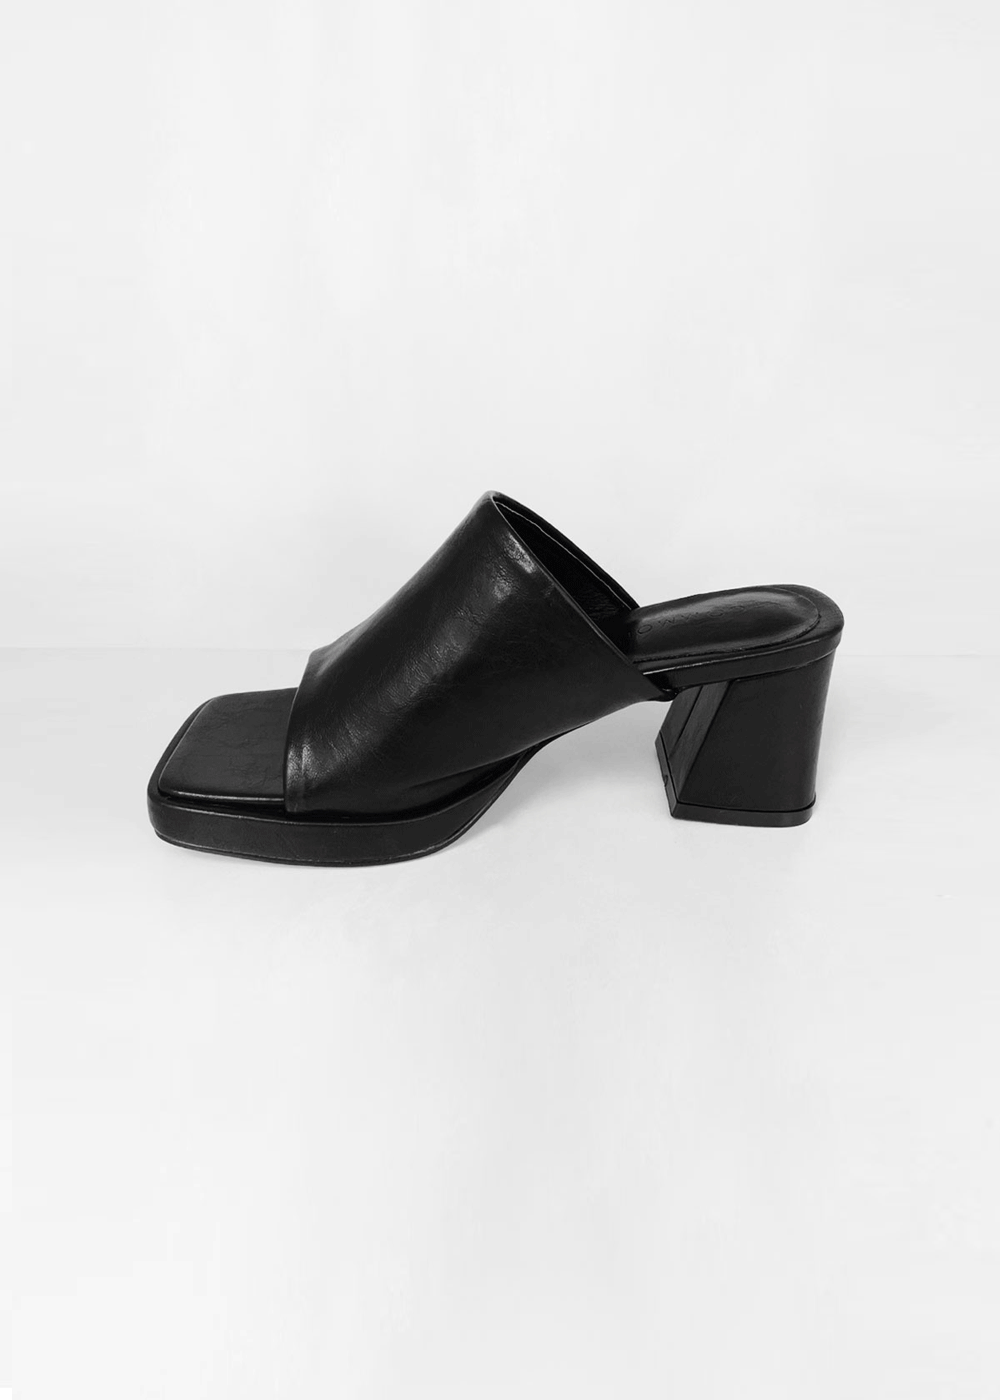 Square heel slipper